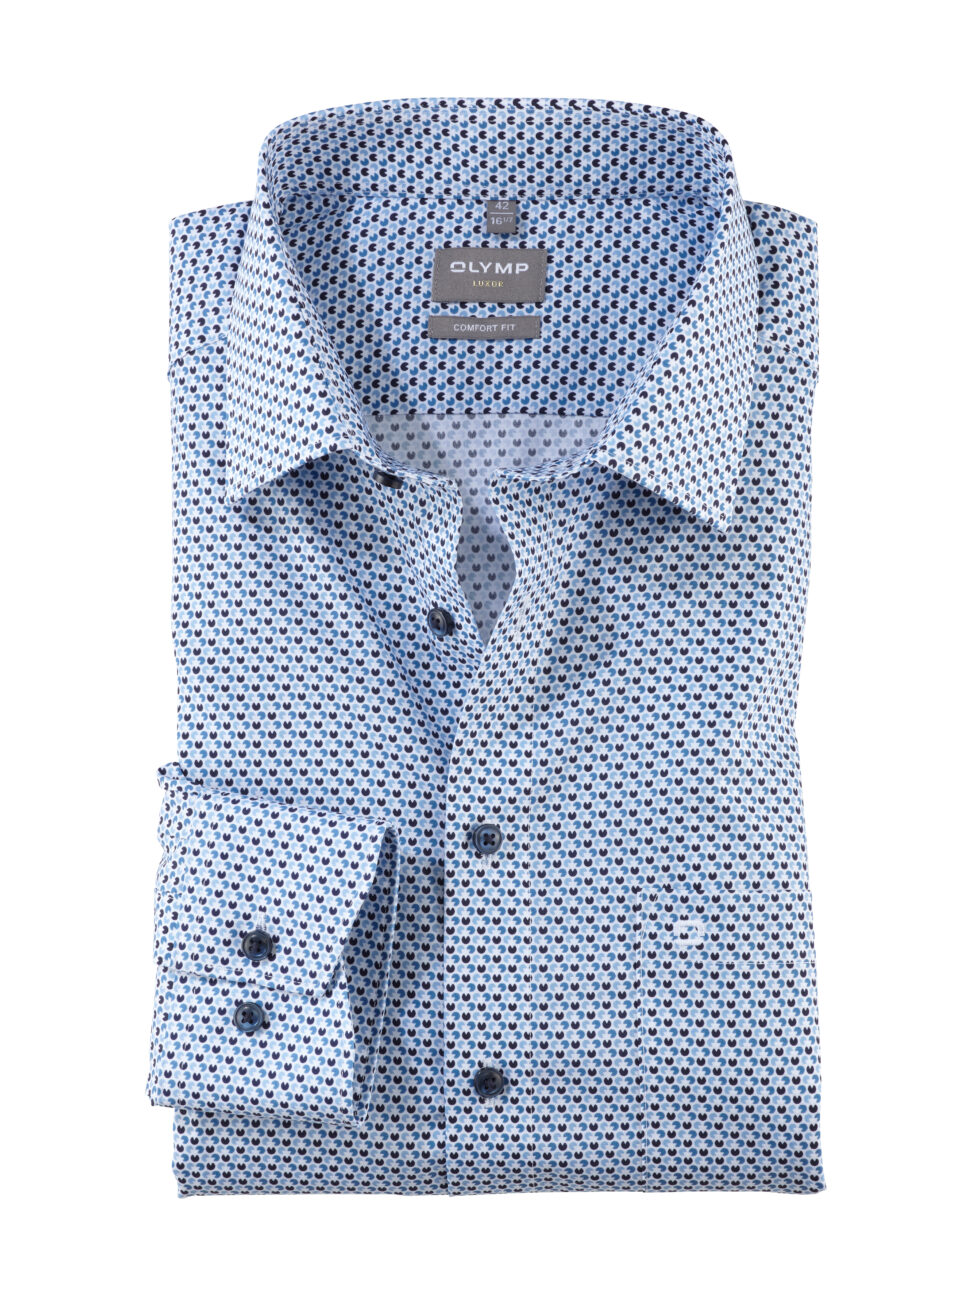 Koszula OLYMP Luxor comfort fit / Niebieskie wzorki / New Kent / 10114411